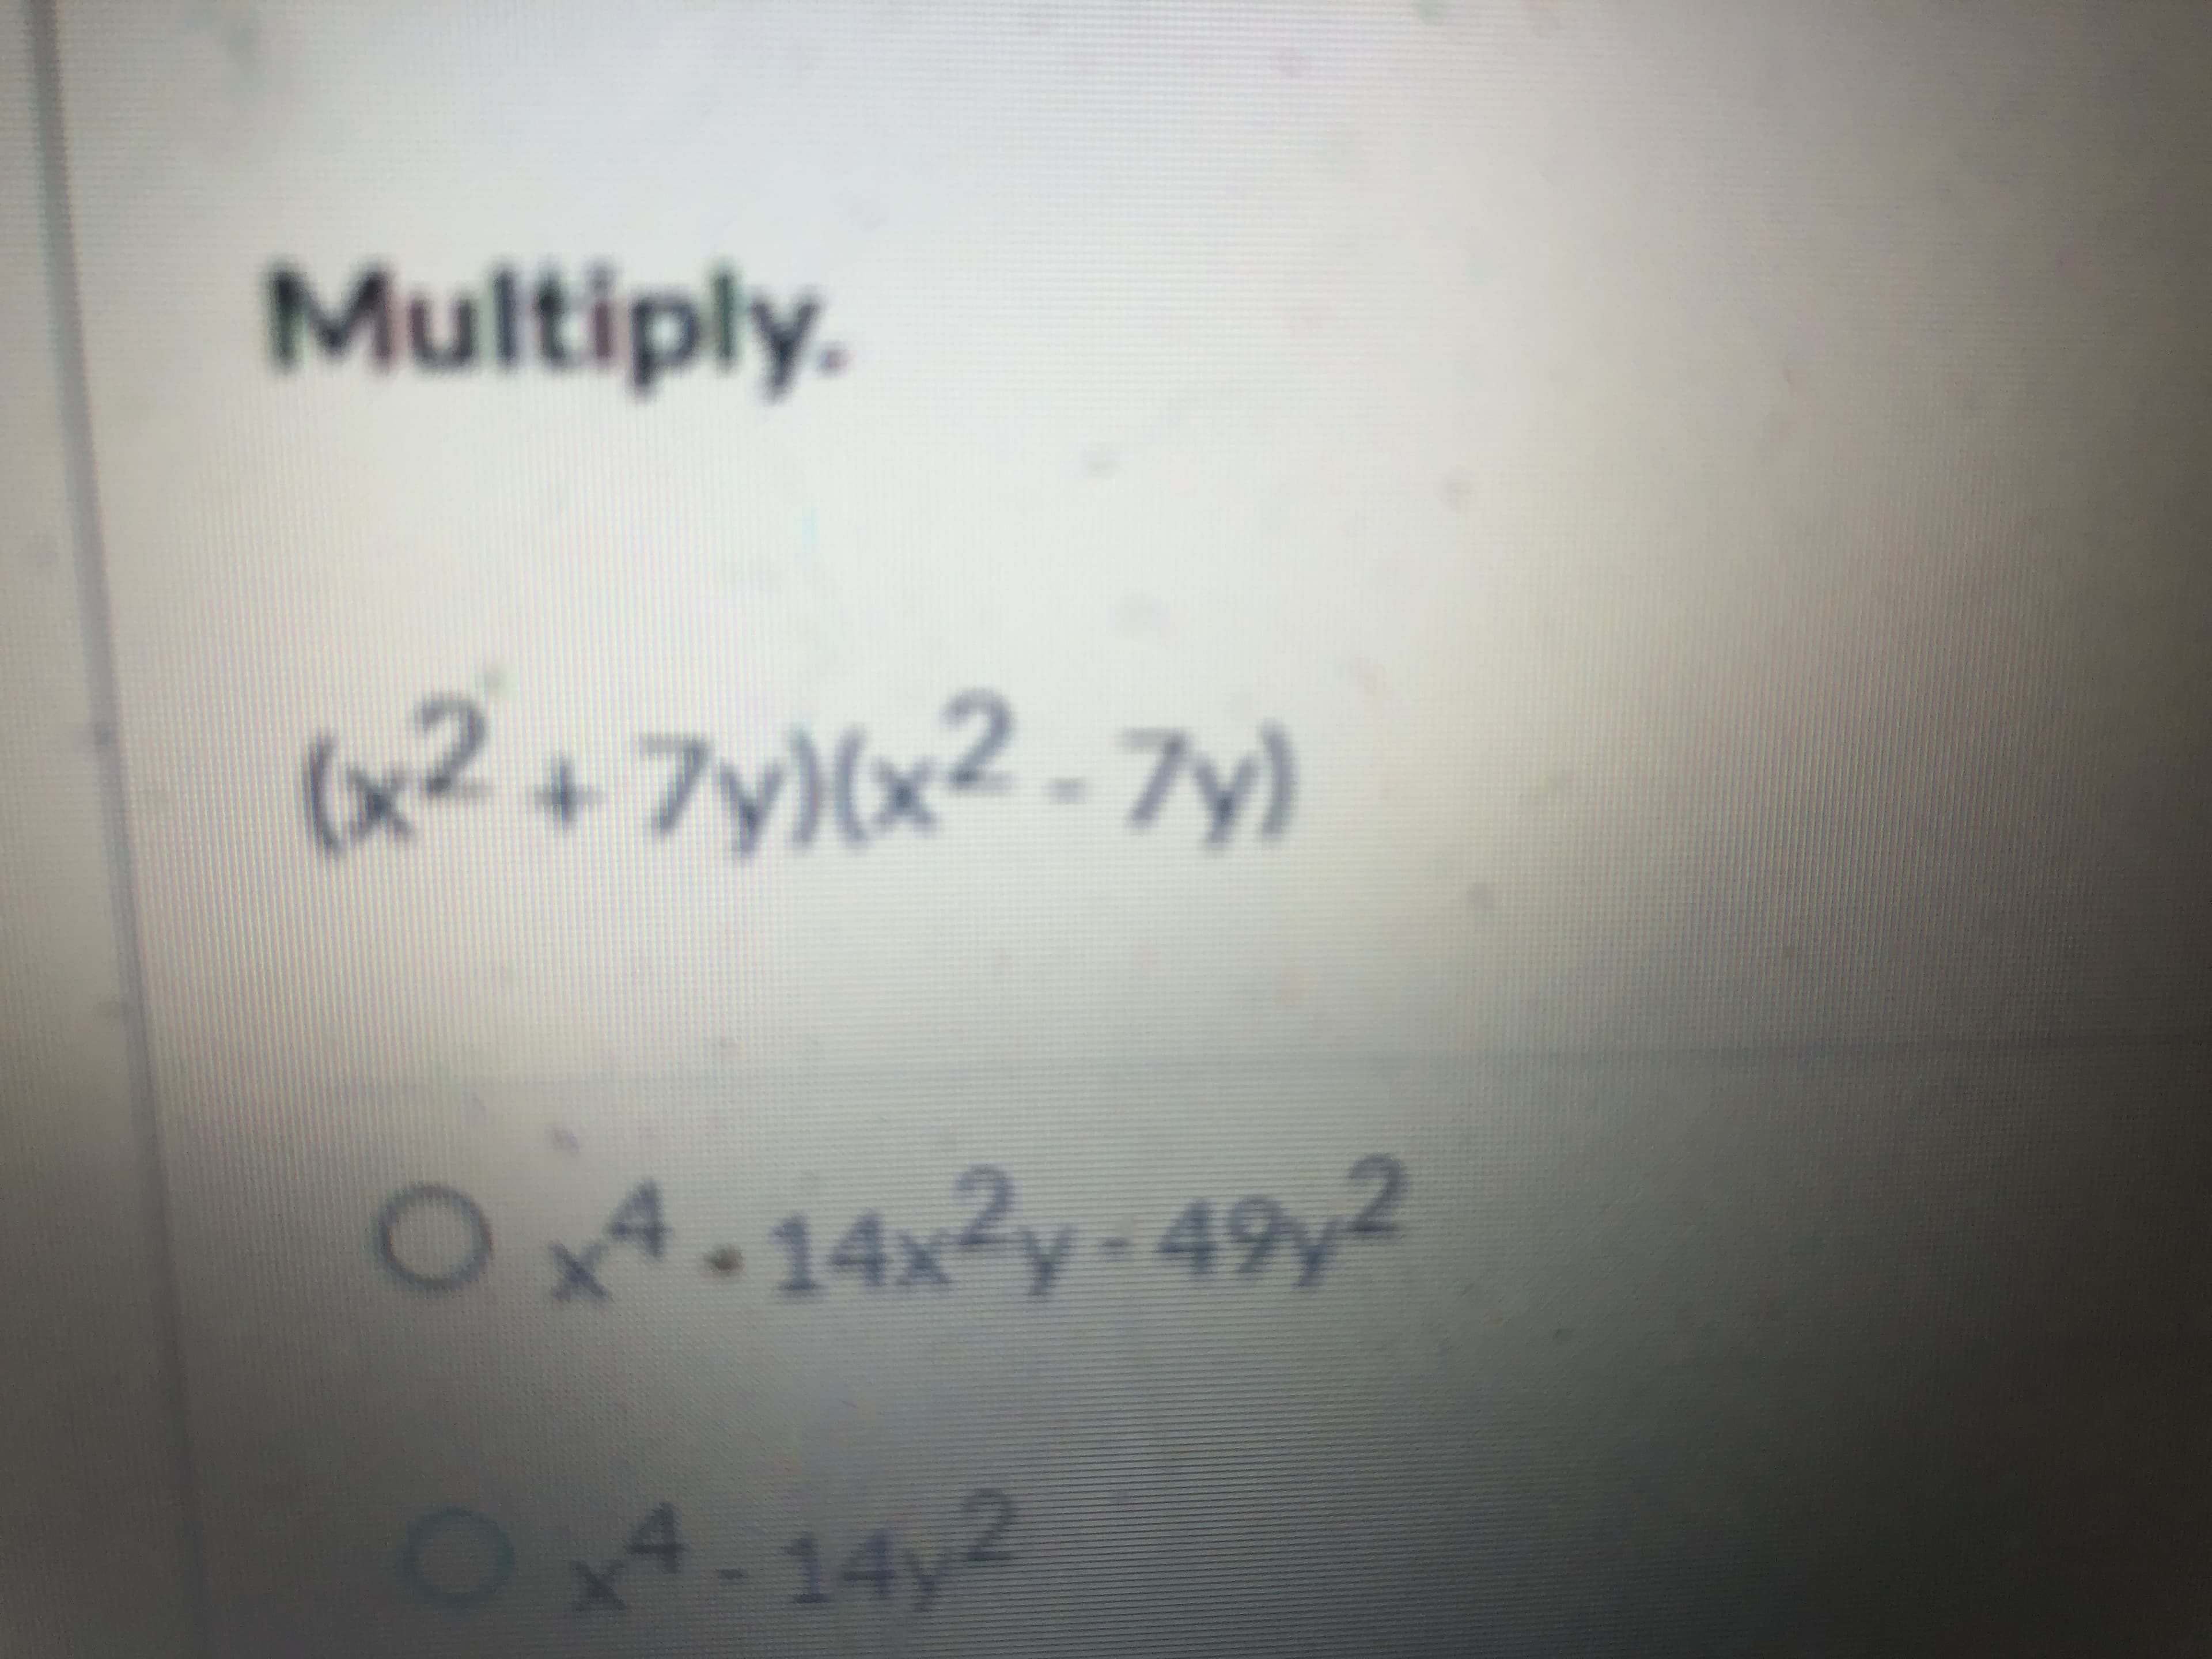 Multiply.
+ 7y)(x² - 7y)
O4.14,2y-49y2
14x Y
O4-14y2
